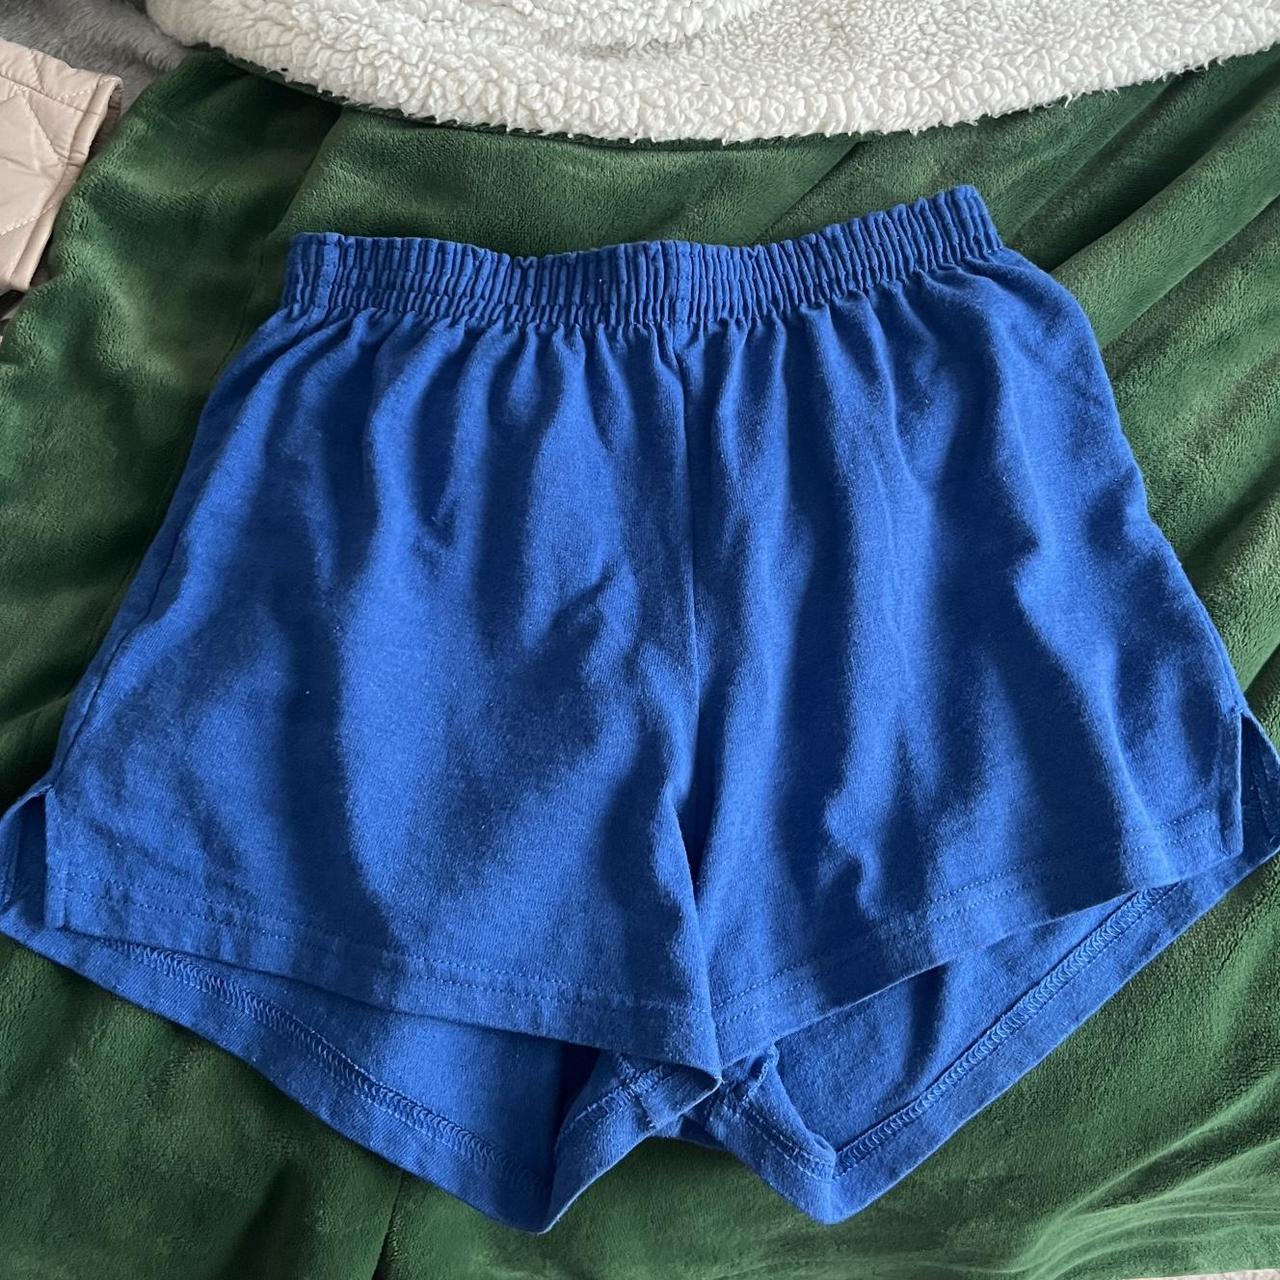 Soffe Women's Blue Shorts | Depop